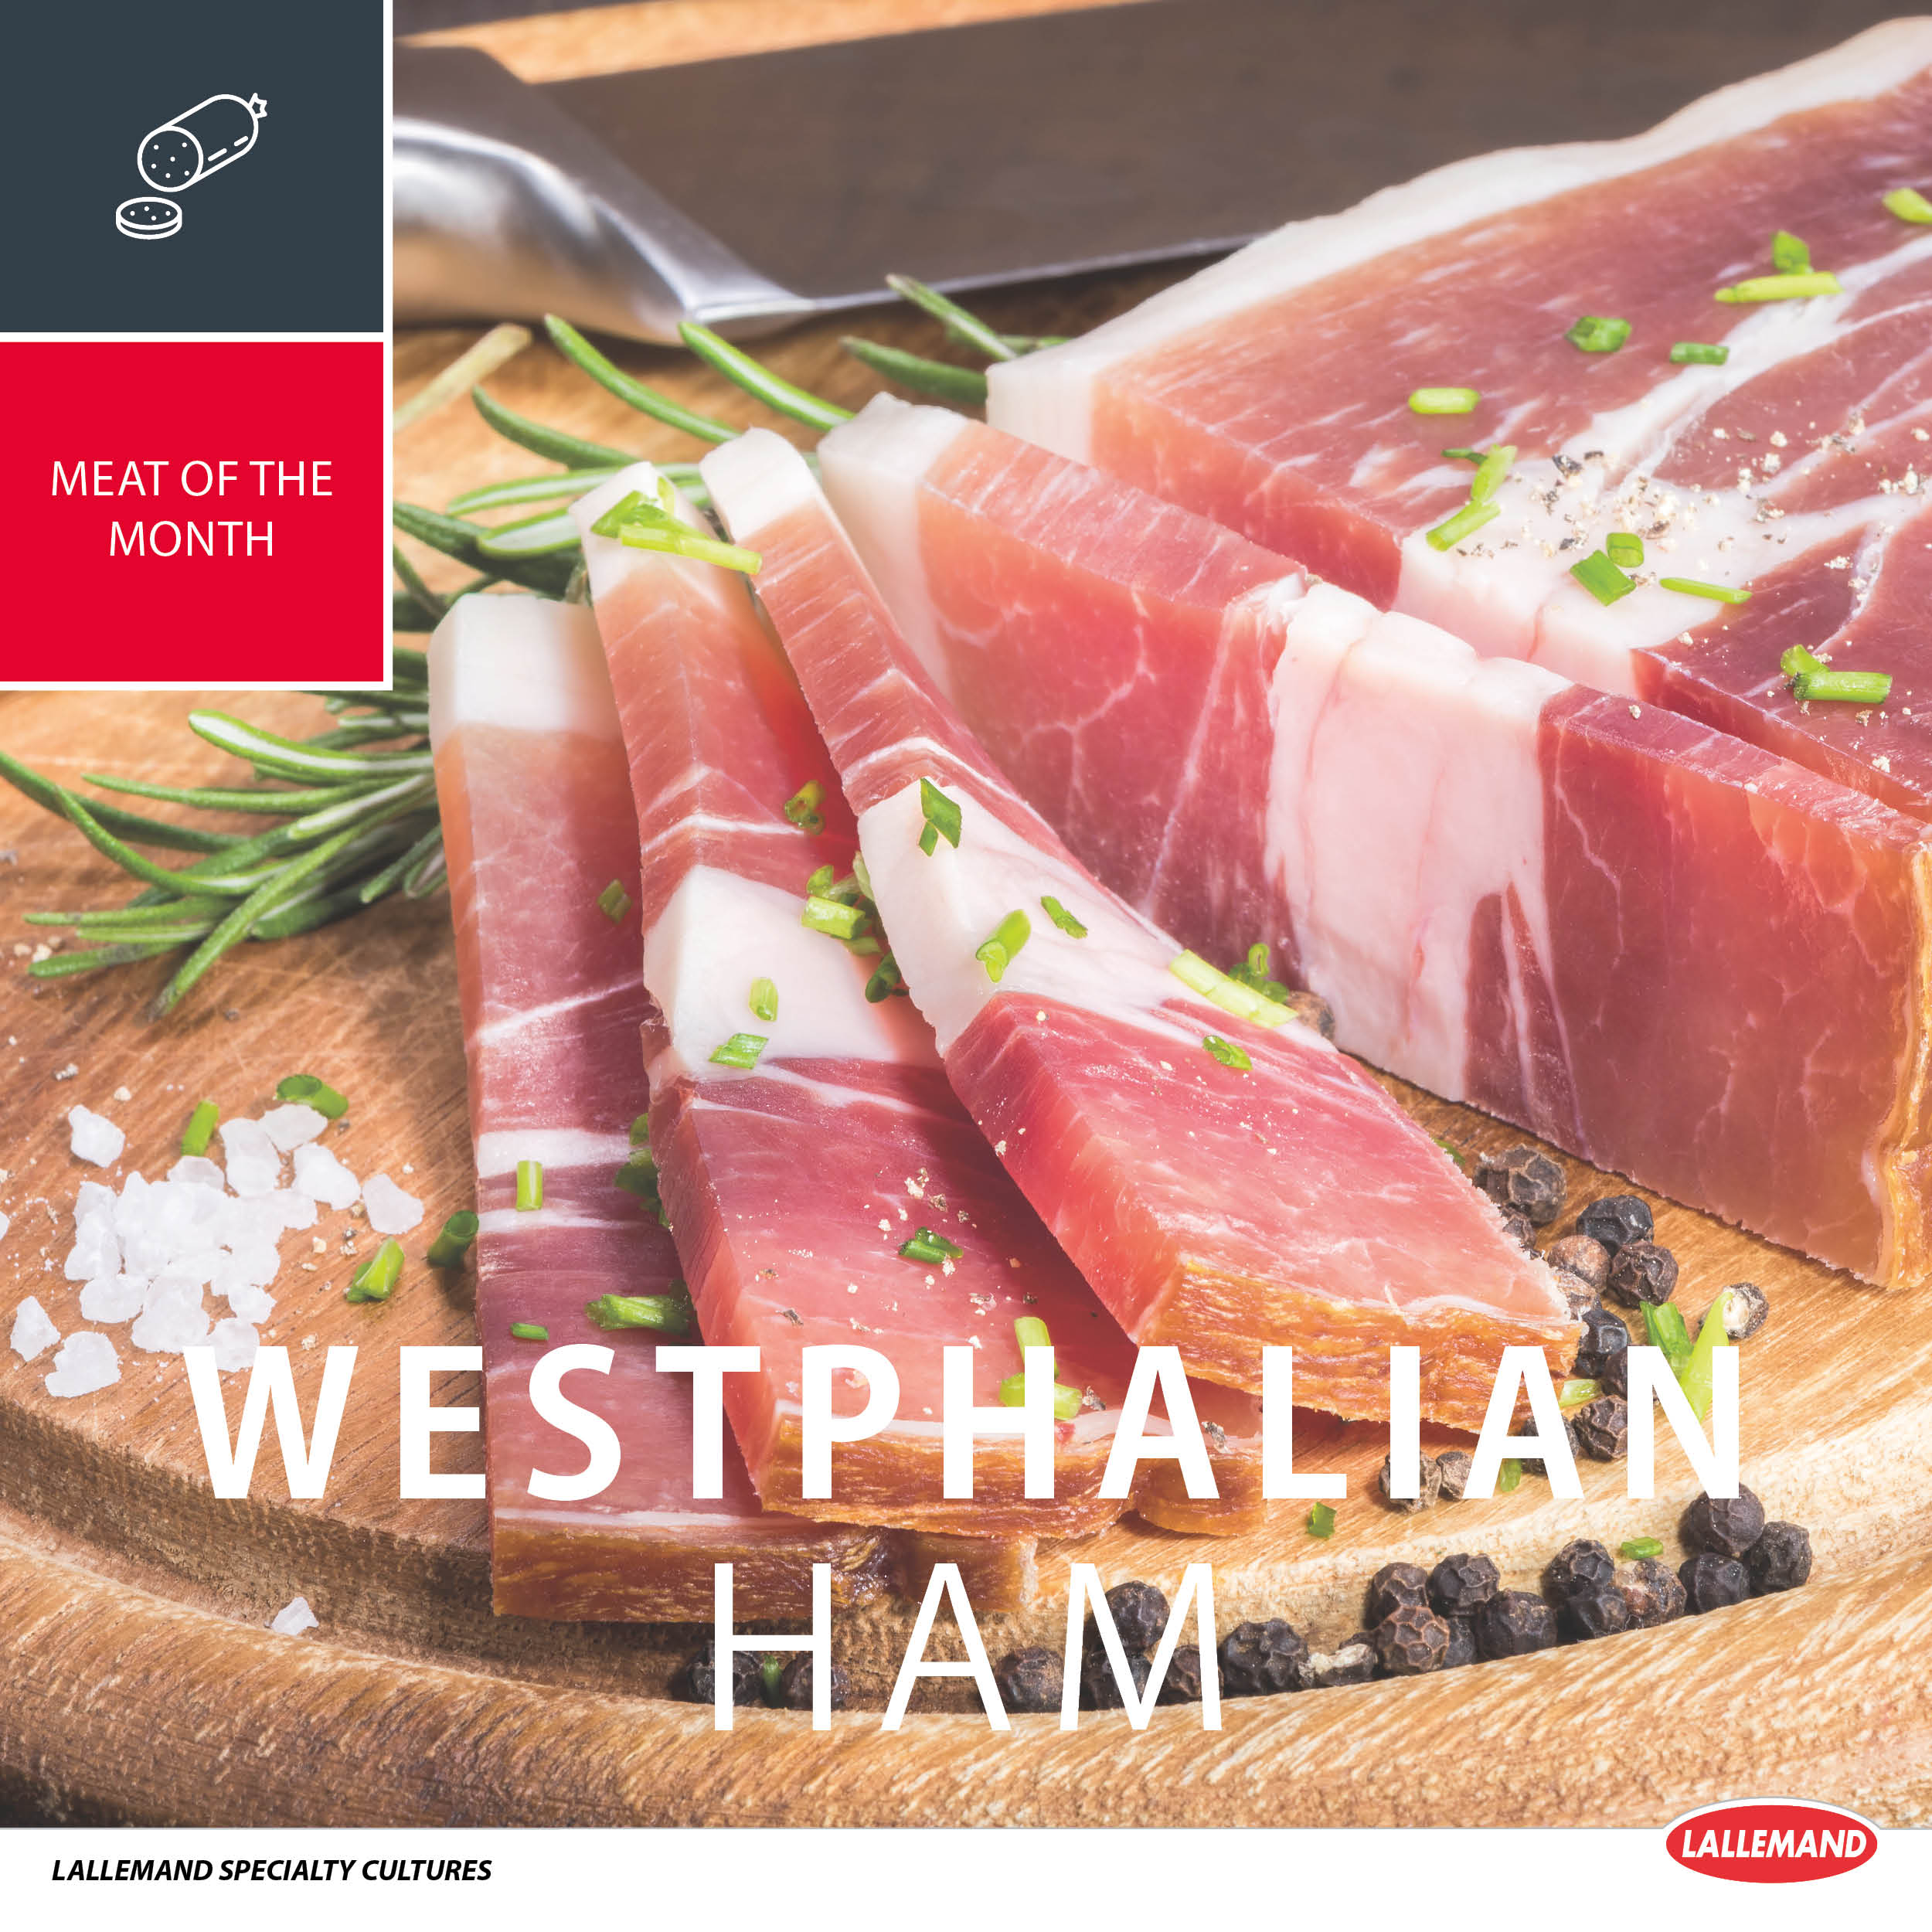 Westphalian ham as meat of August !